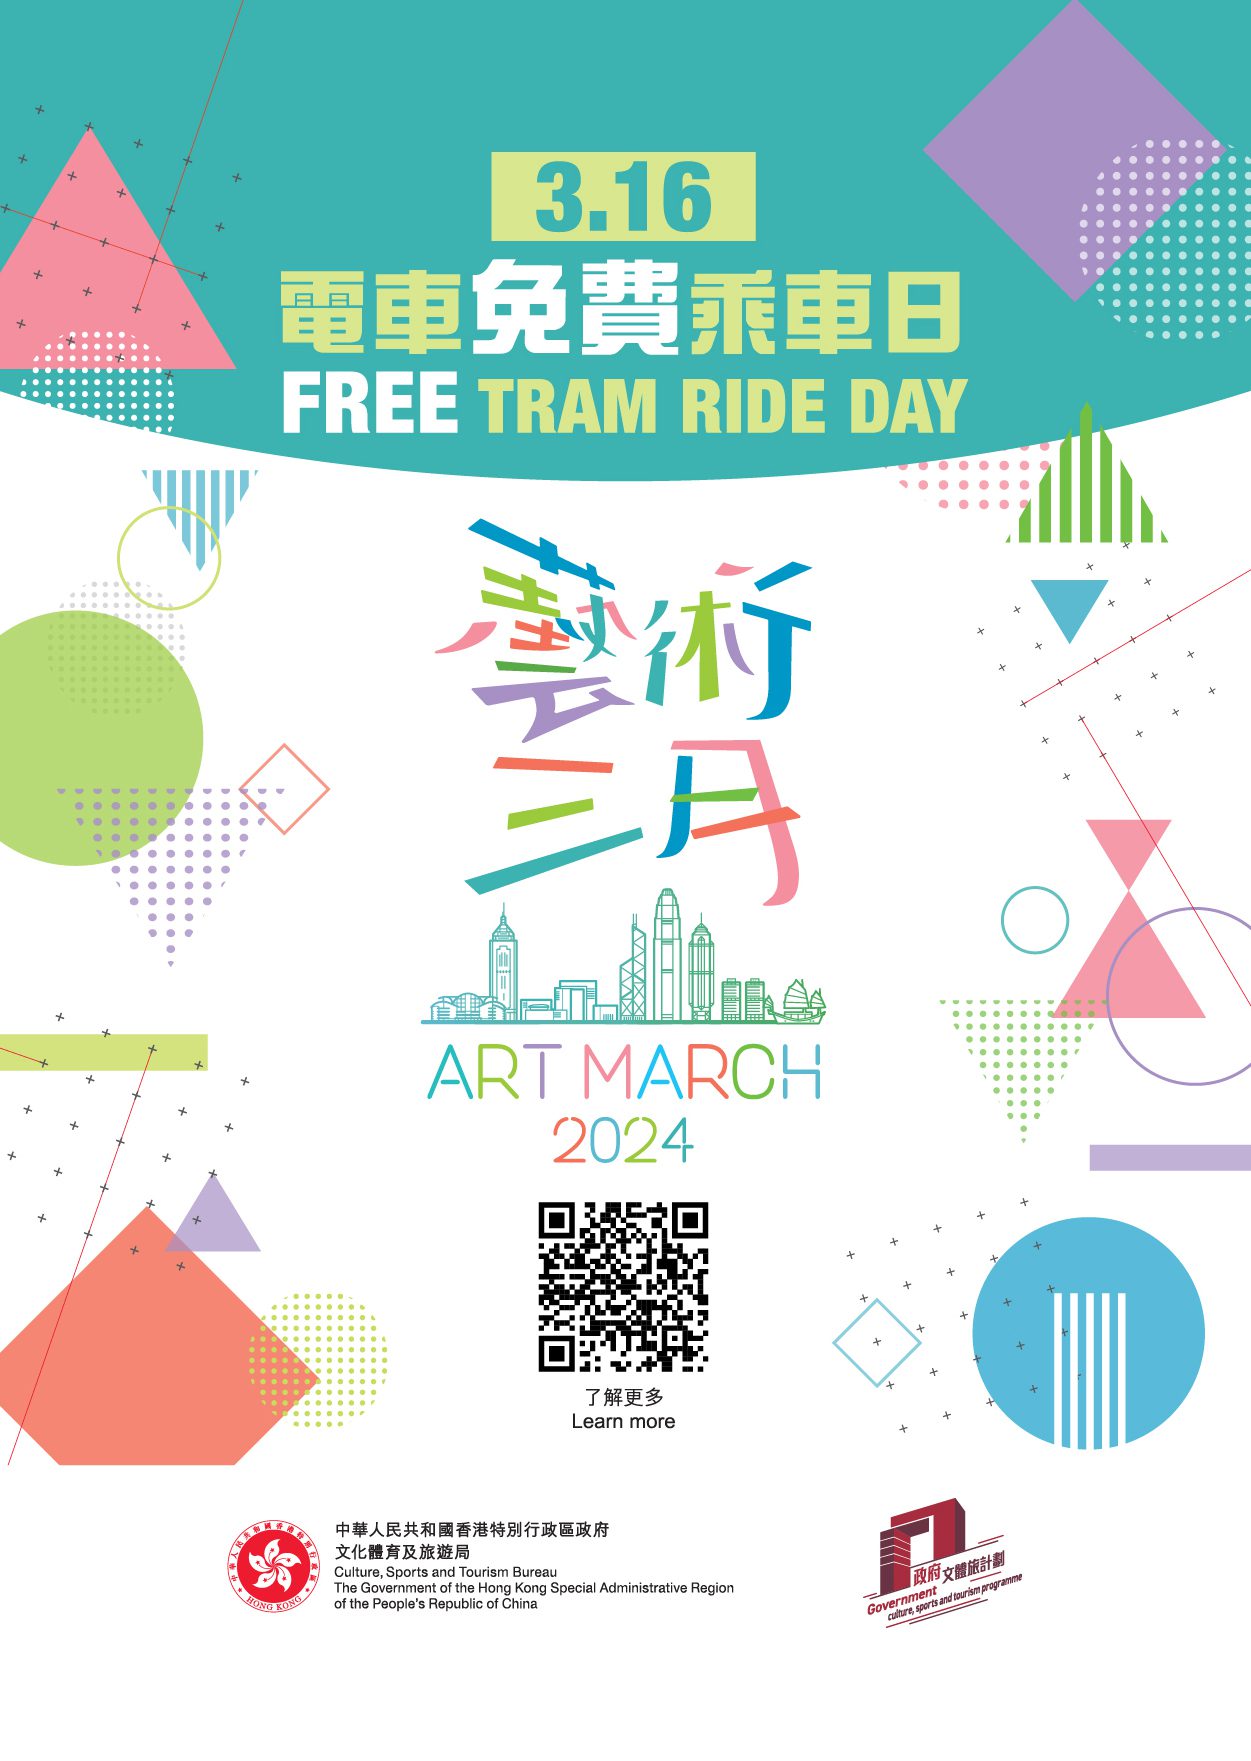 「藝術三月」邀請市民免費乘搭電車2